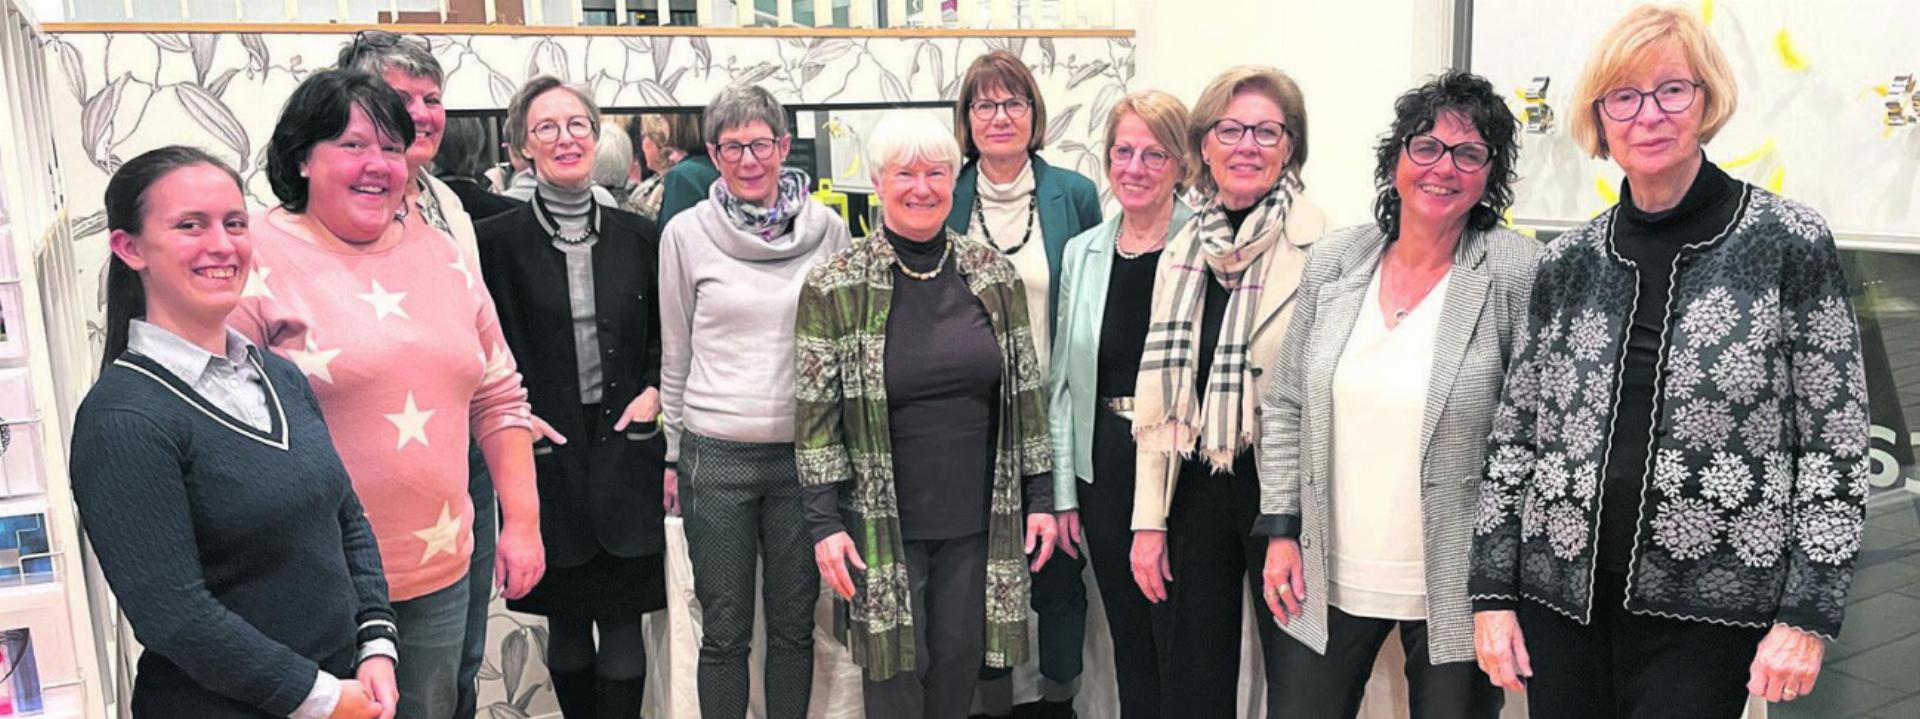 Die FDP-Frauen erlebten einen spannenden Abend. Foto: zVg